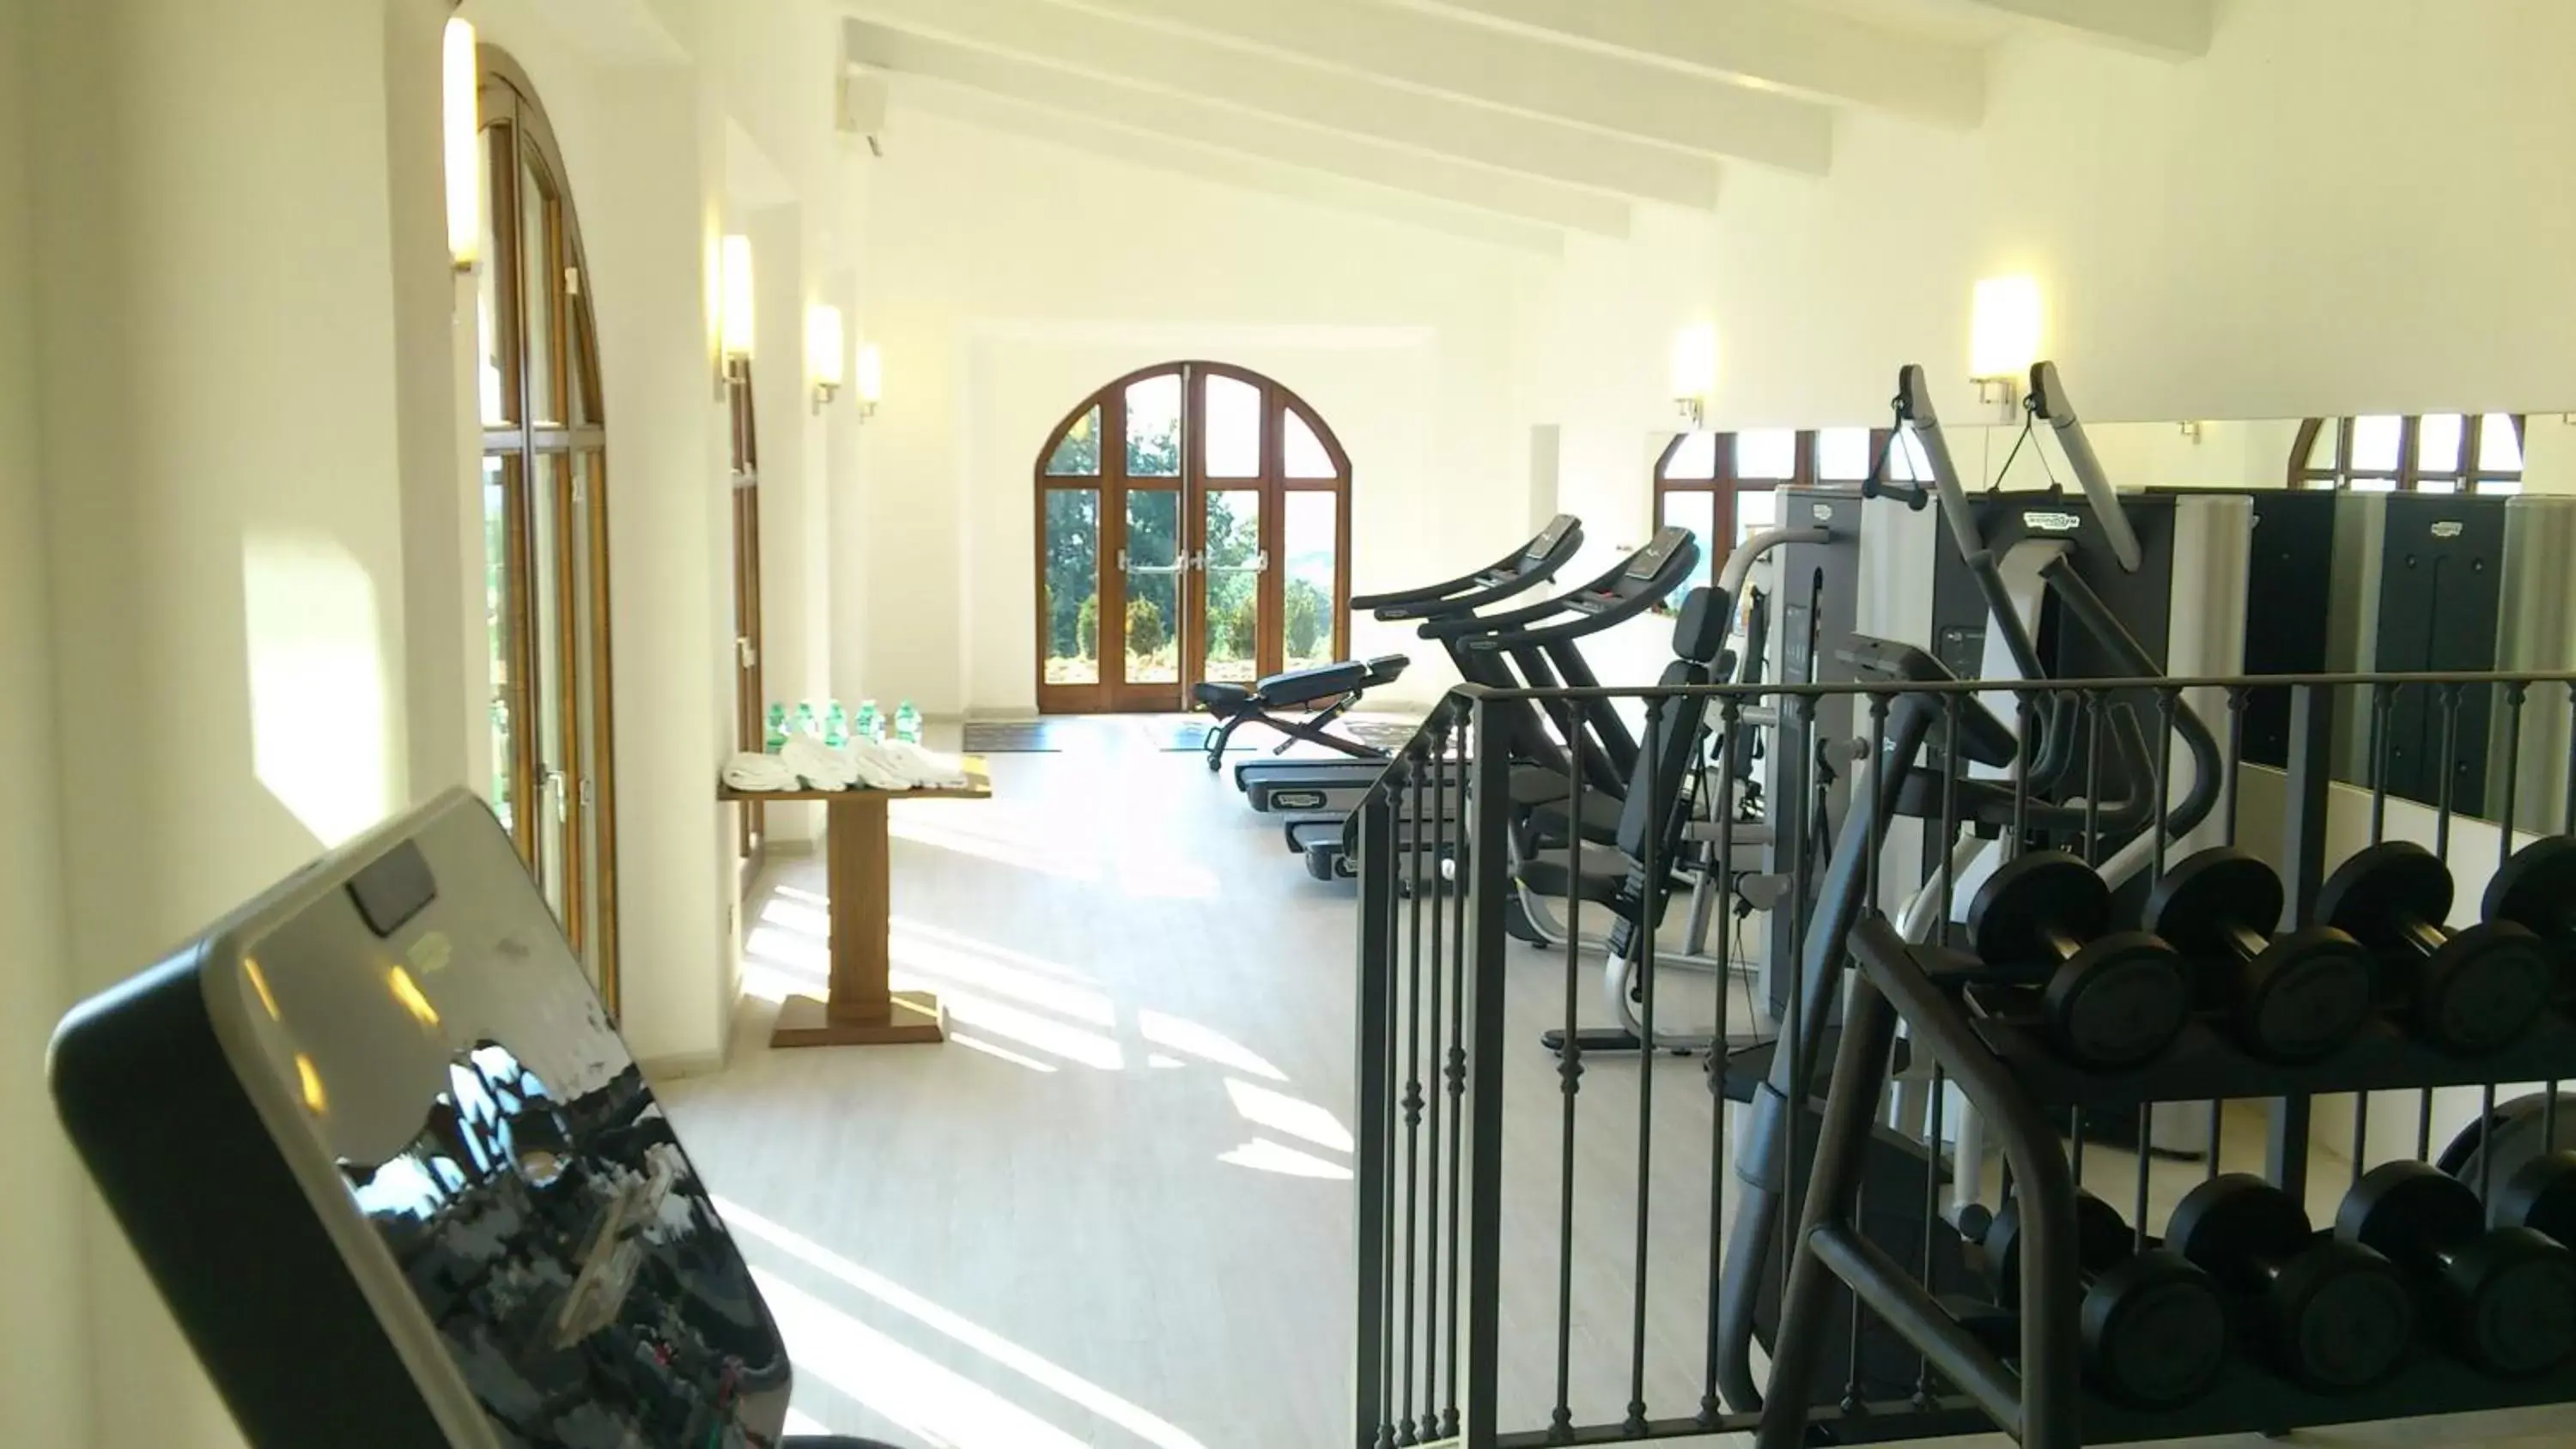 Steam room, Fitness Center/Facilities in Villa Tolomei Hotel & Resort